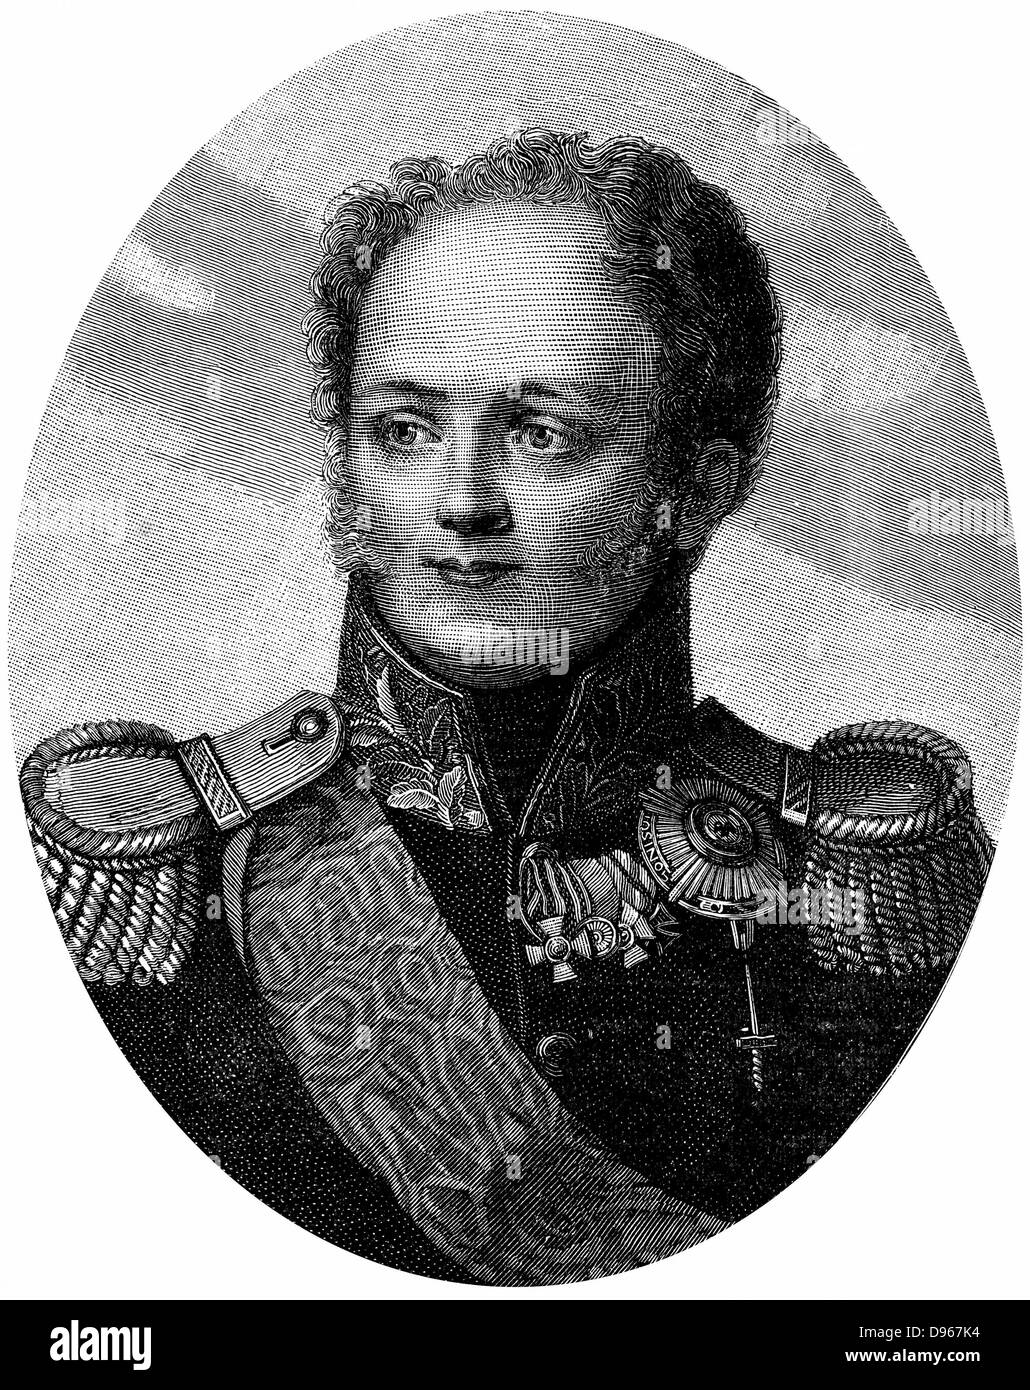 Alejandro I (1777-1825), zar de Rusia desde 1801, en uniforme militar. Grabado Foto de stock